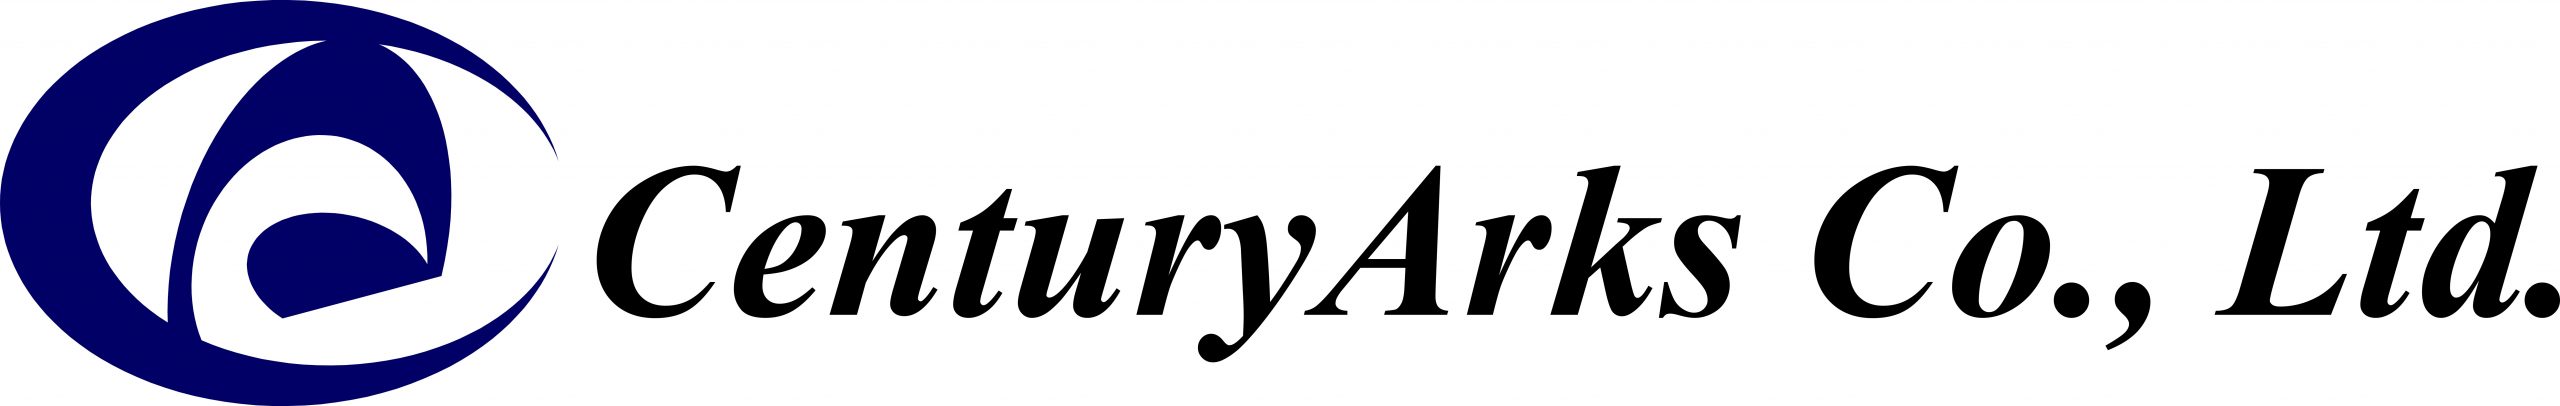 centuryarks-logo-003